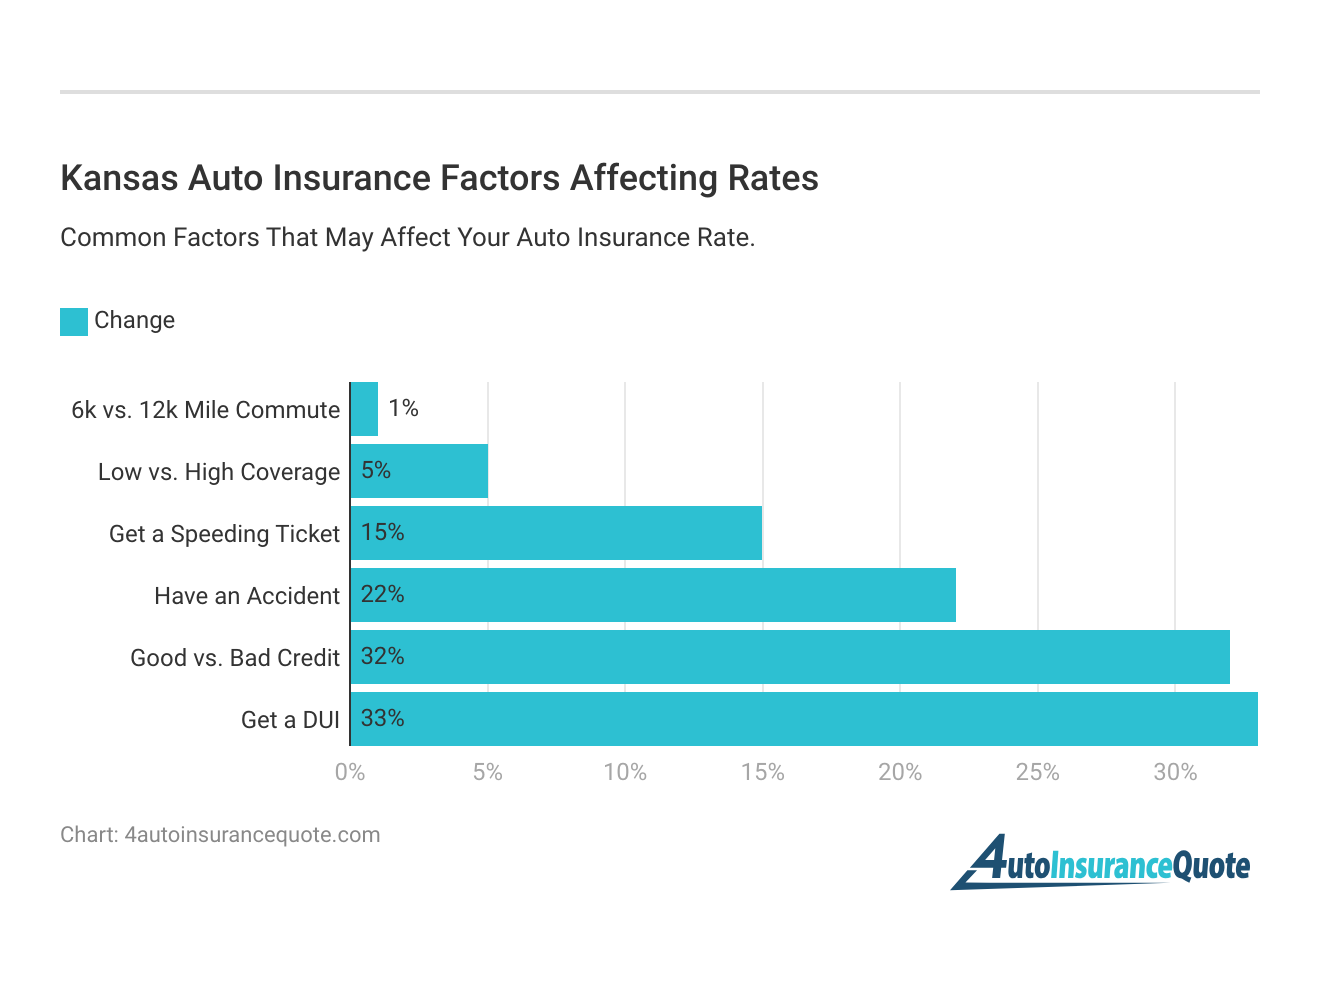 <h3>Kansas Auto Insurance Factors Affecting Rates</h3>